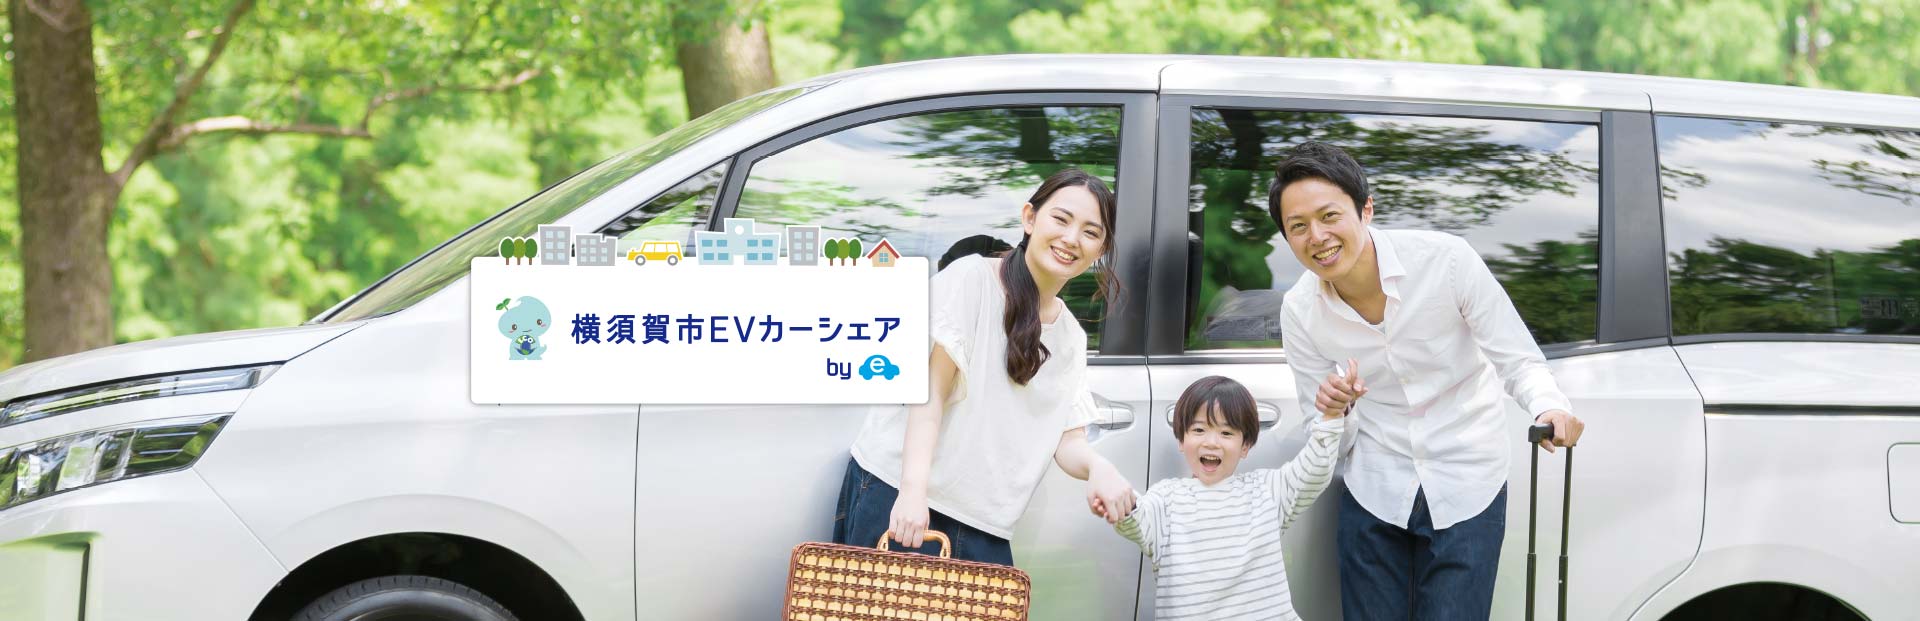 横須賀市EVカーシェア Supported by コスモのEVカーシェア 人と街が、つながる。